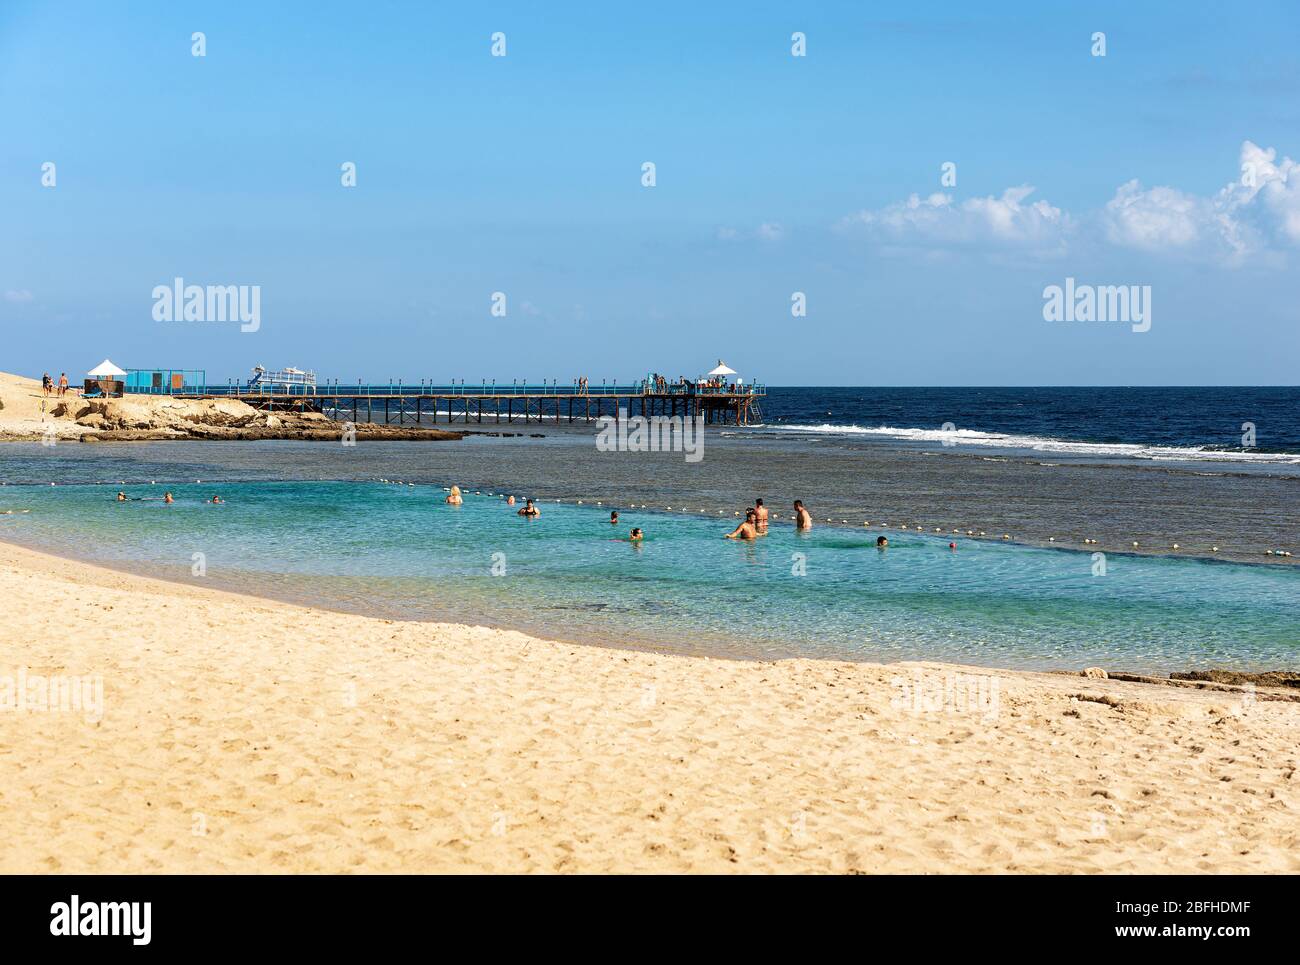 Wunderschöner Sandstrand und Meerlandschaft mit einem Pier über dem Korallenriff, wo man tauchen oder schnorcheln kann. Rotes Meer bei Marsa Alam, Ägypten, Afrika Stockfoto